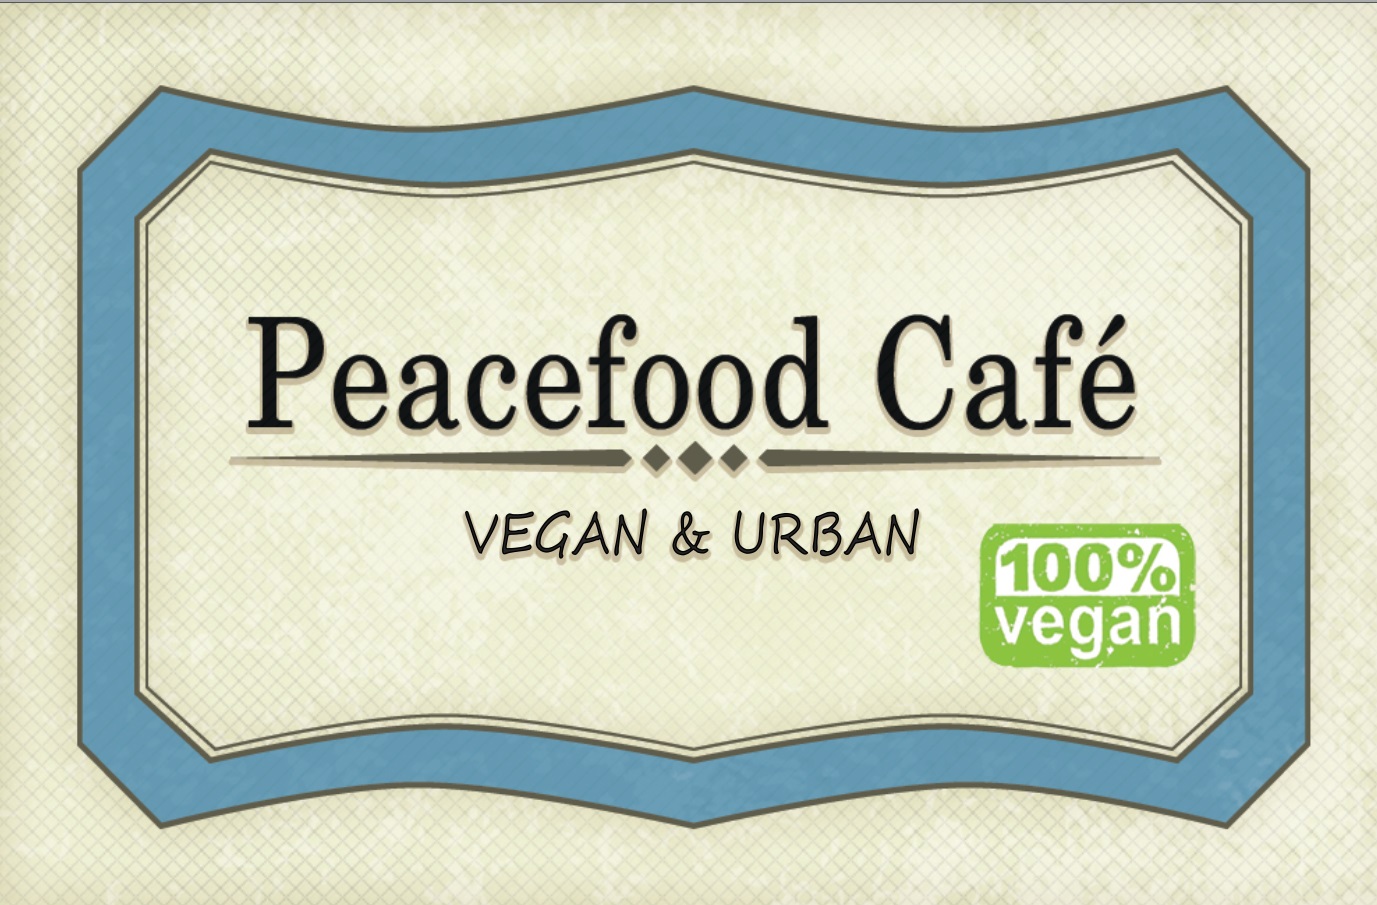 peacefoodcafe carte de visite